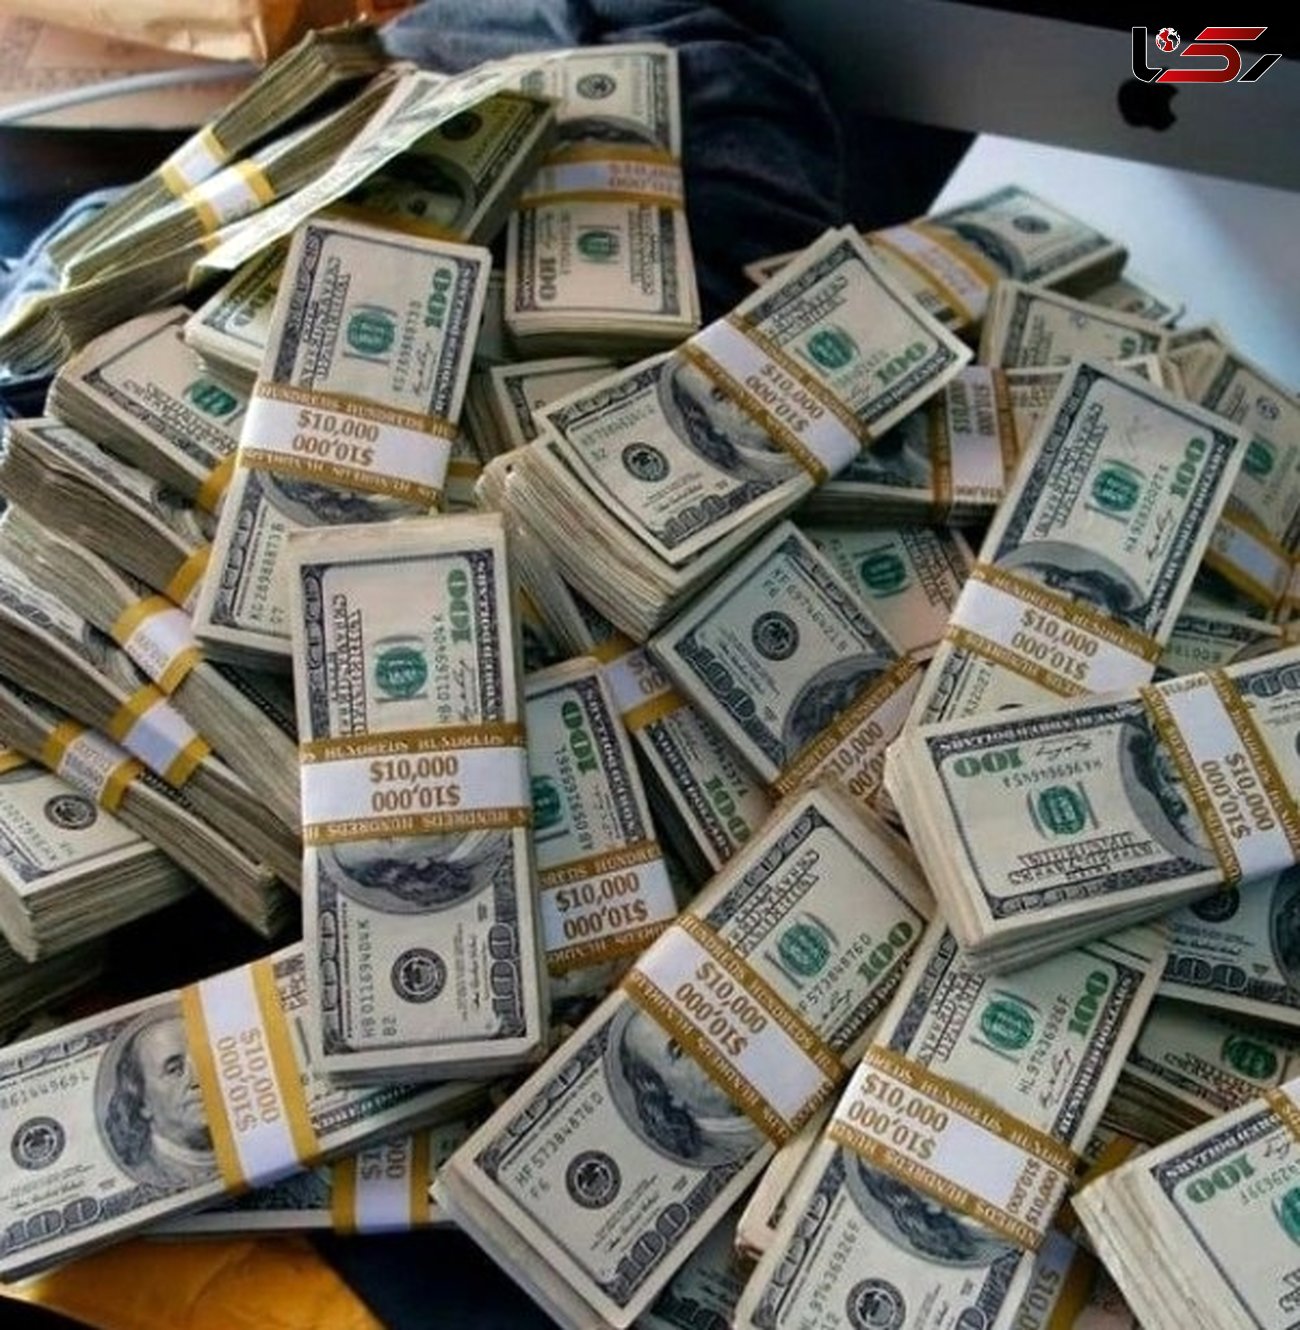 حکم 22 هزار میلیاردی متهمان اخلال در بازار ارز داخلی